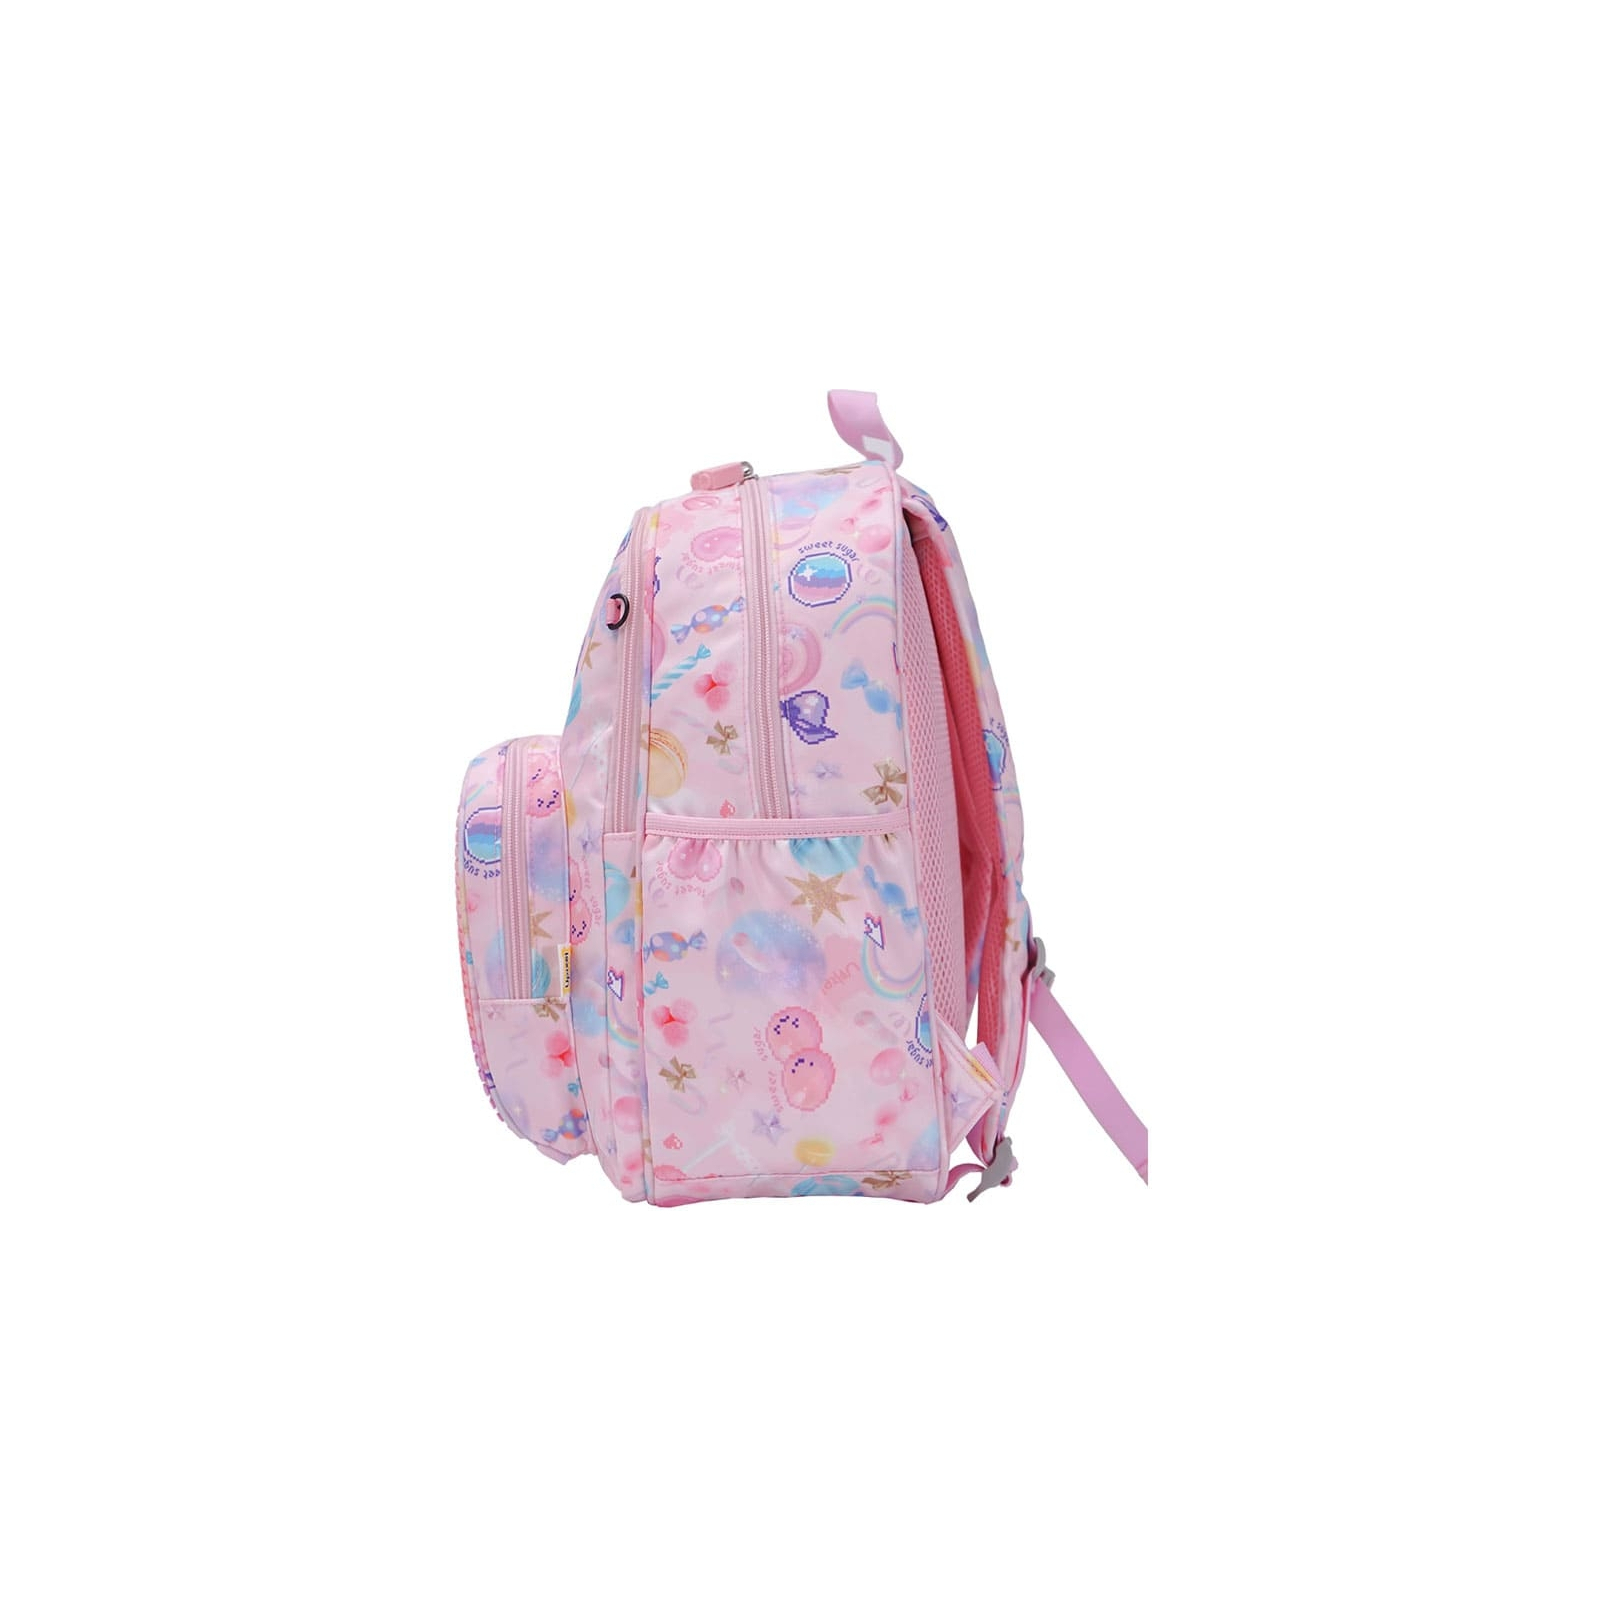 Рюкзак школьный Upixel Futuristic Kids School Bag - Розовый (U21-001-F) изображение 6